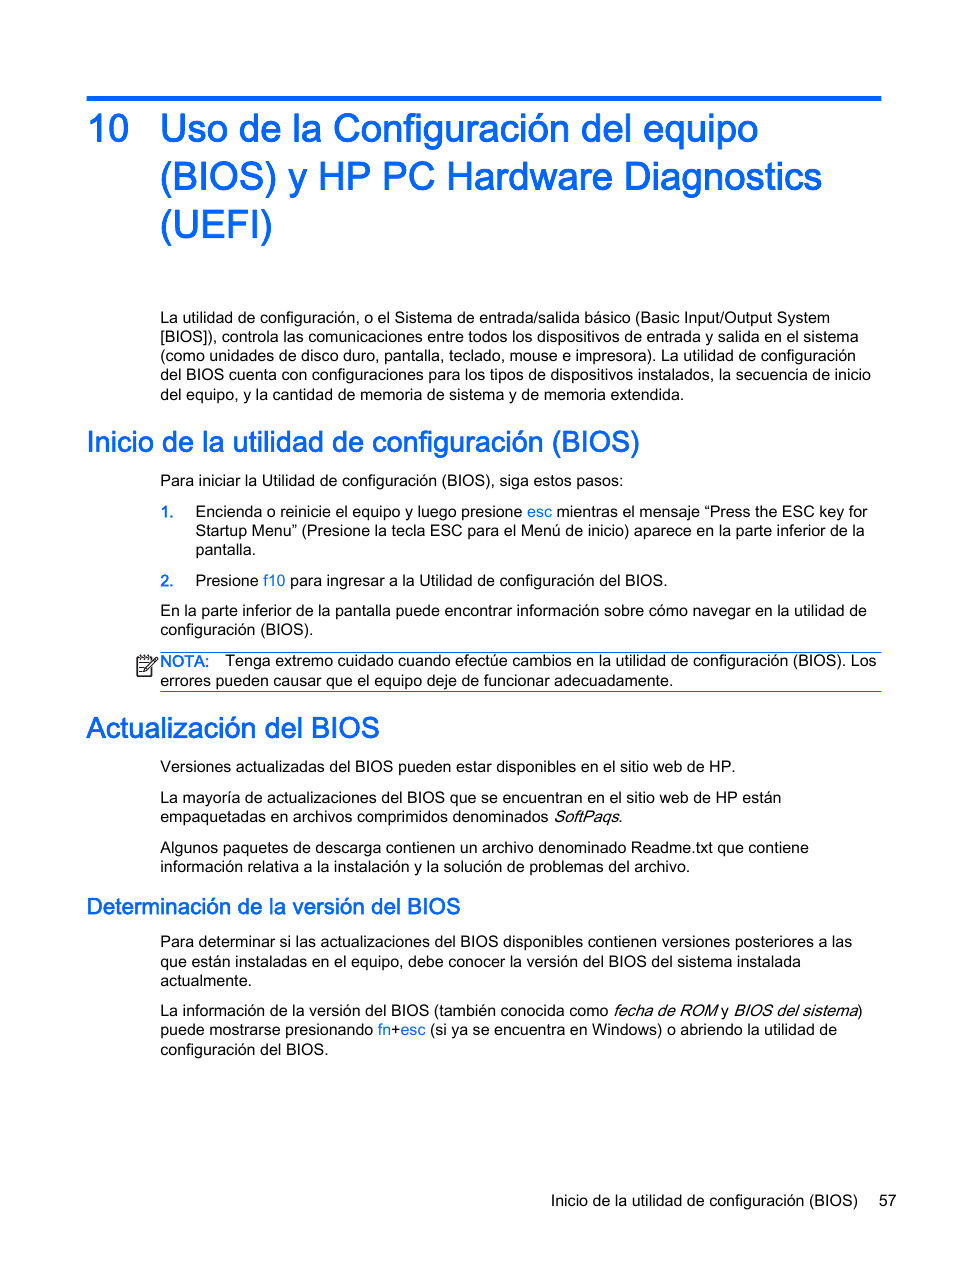 Inicio de la utilidad de configuración (bios), Actualización del bios, Determinación de la versión del bios | HP PC Notebook HP 245 G3 Manual del usuario | Página 67 / 89